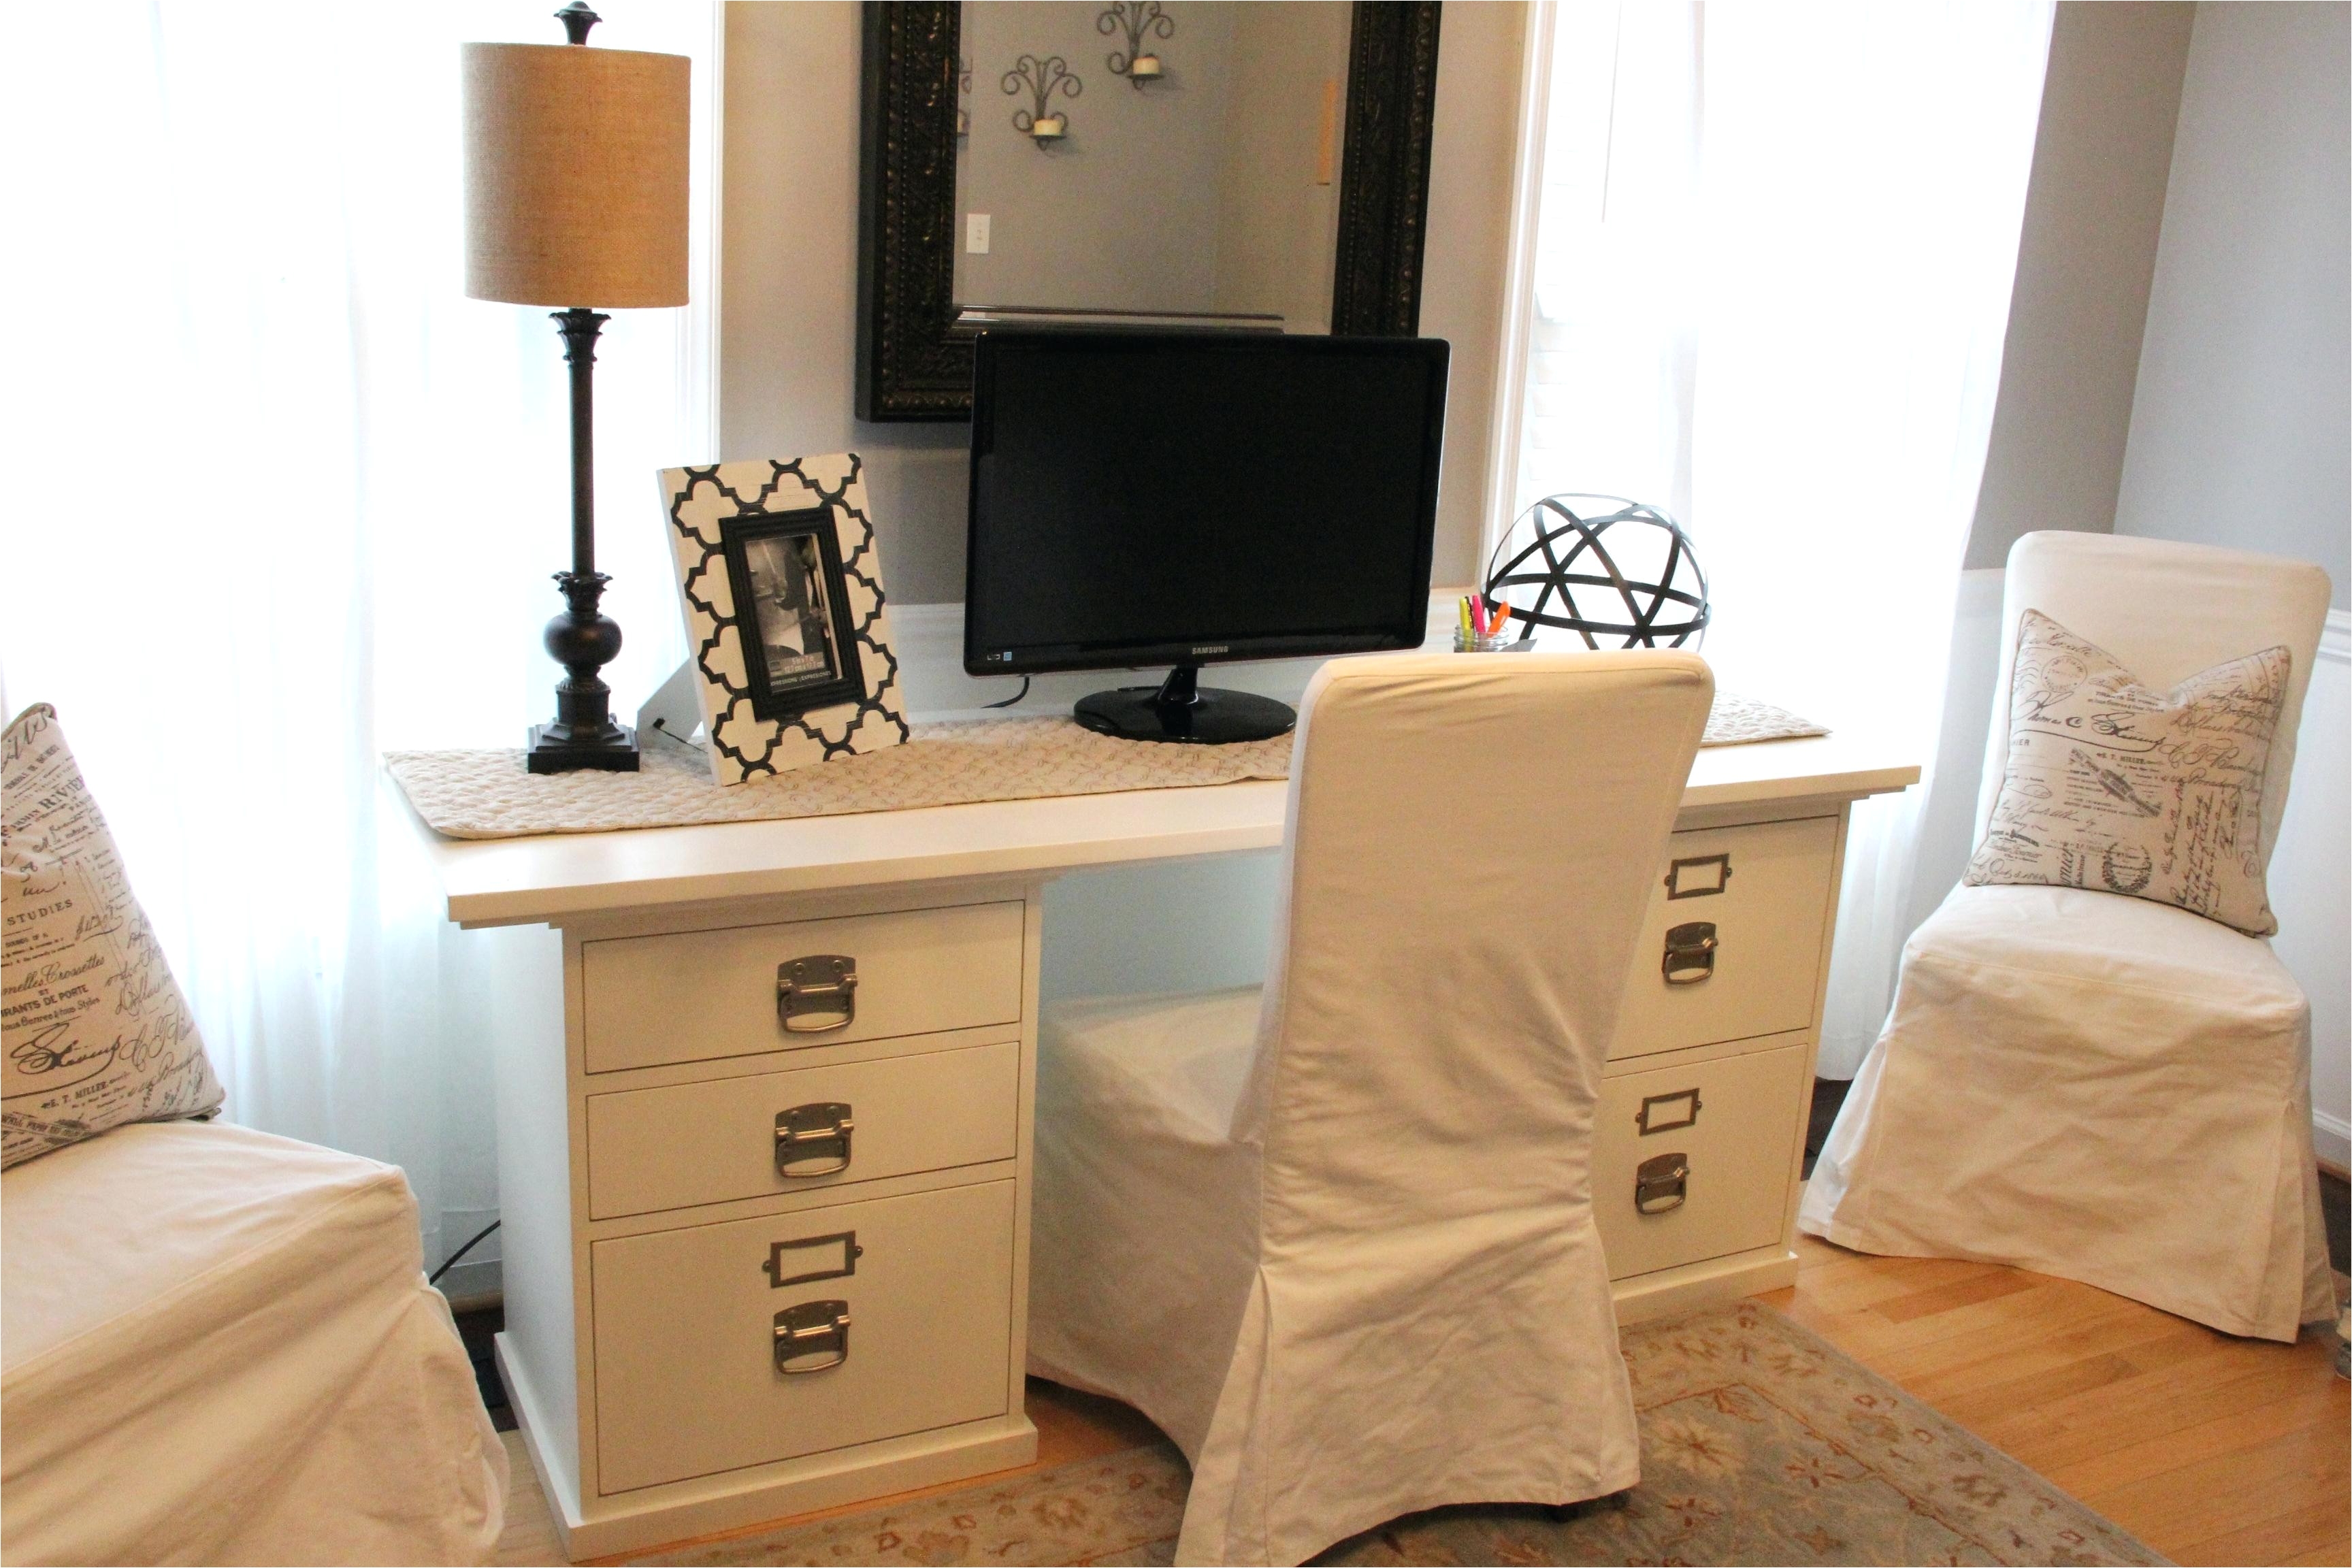 craigslist nj bedroom furniture inspirational craigslist desk for sale s white used furniture by owner of